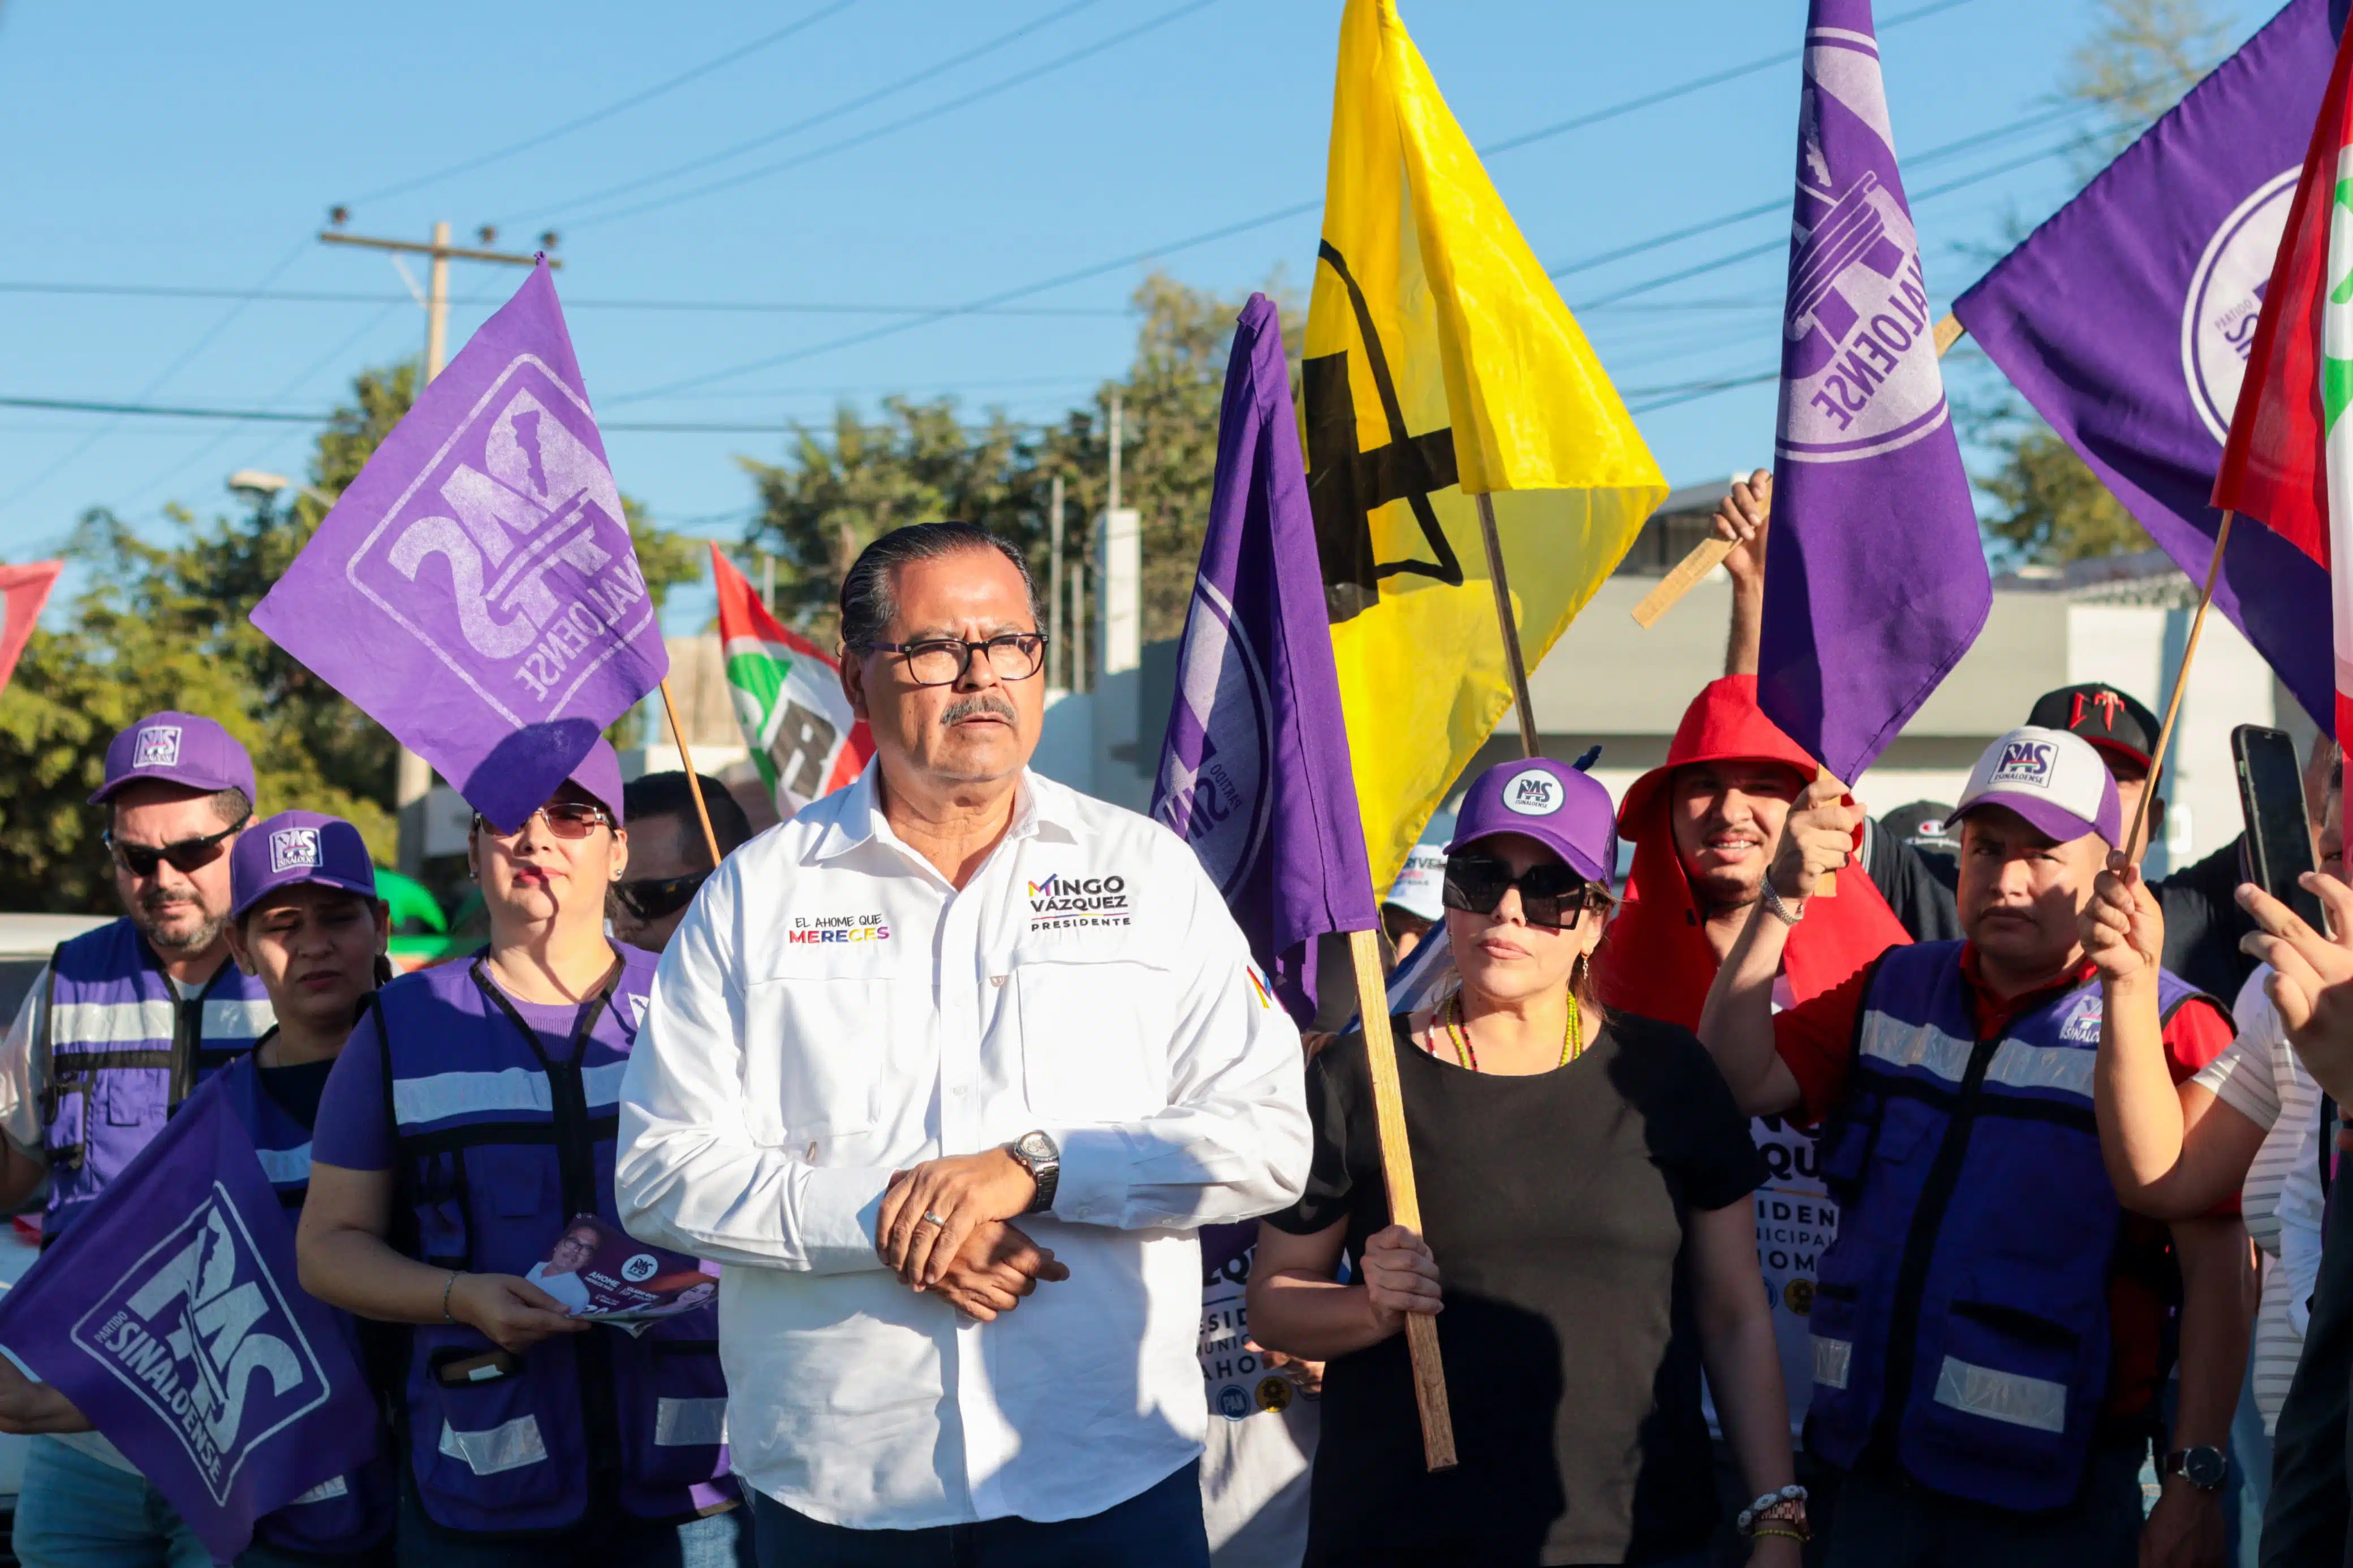 José Domingo “Mingo” Vázquez Márquez, candidato a la presidencia municipal de Ahome por la coalición “Fuerza y corazón por Sinaloa” integrada por PAN, PRI, PRD y PAS, durante su campaña en la colonia Rubén Jaramillo de Los Mochis